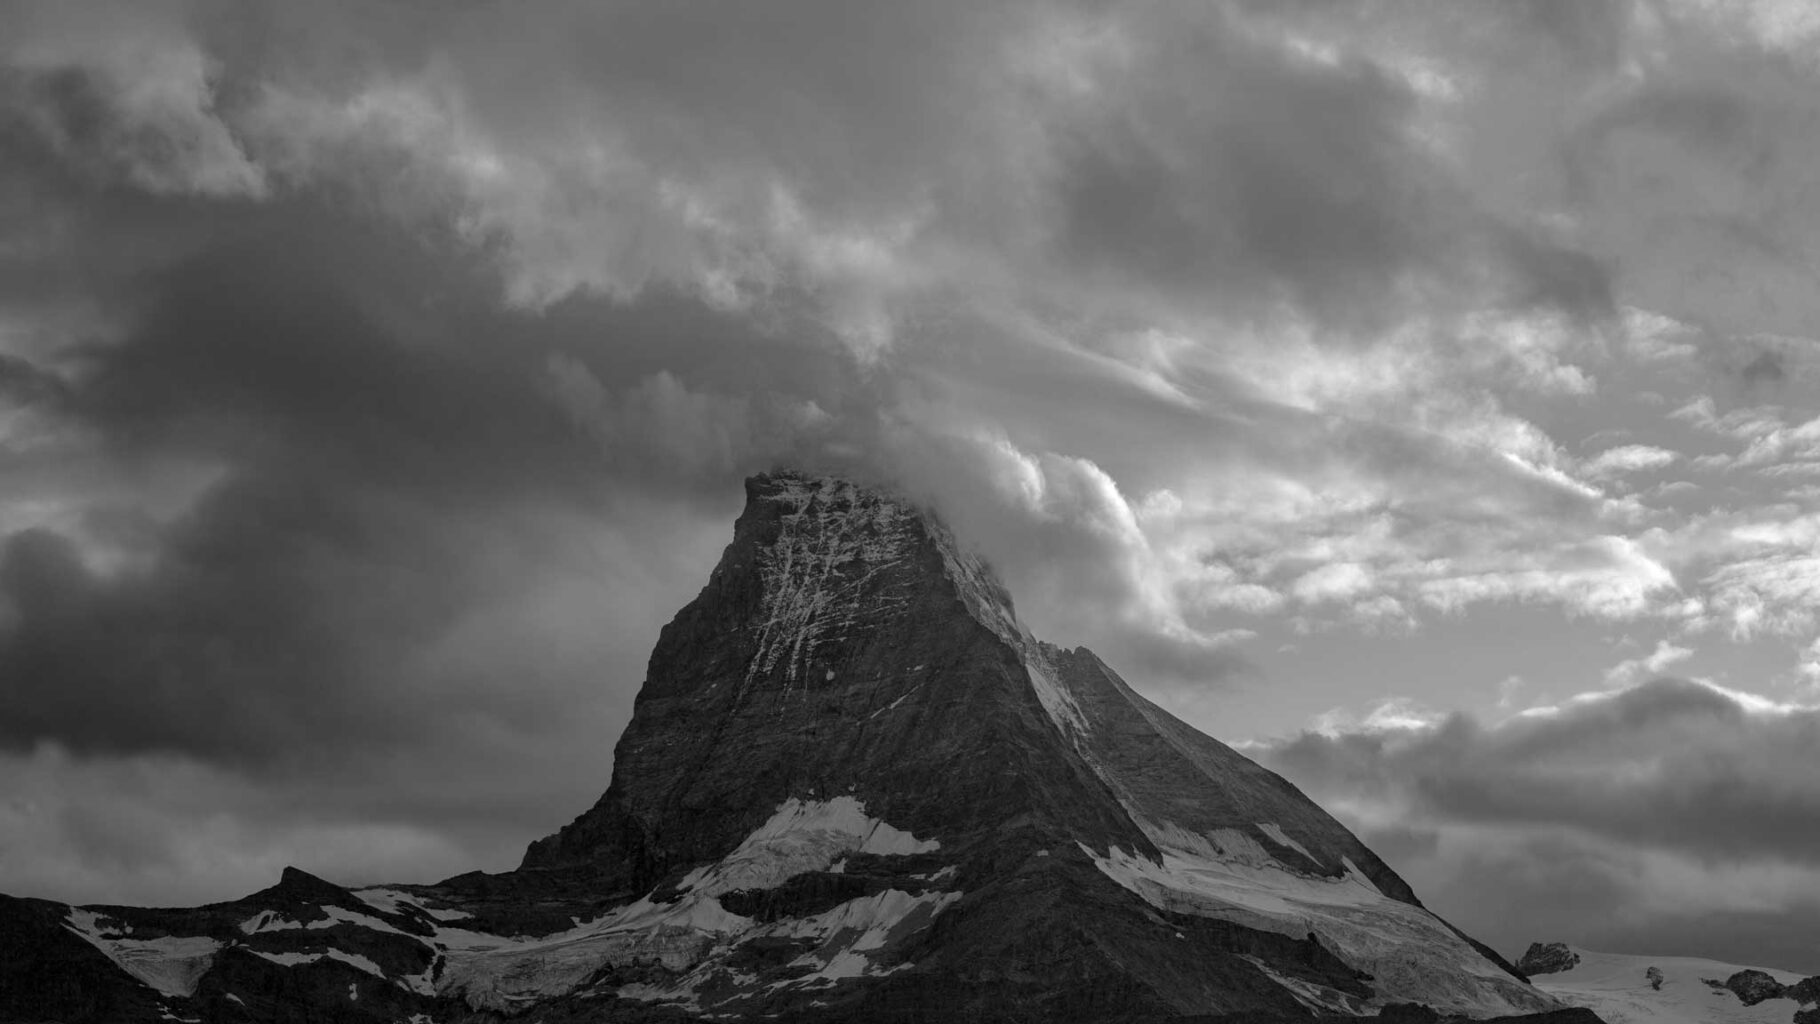 Matterhorn, Wallis, Schweiz 45° 58 ' 35" N, 7° 39' 31"0